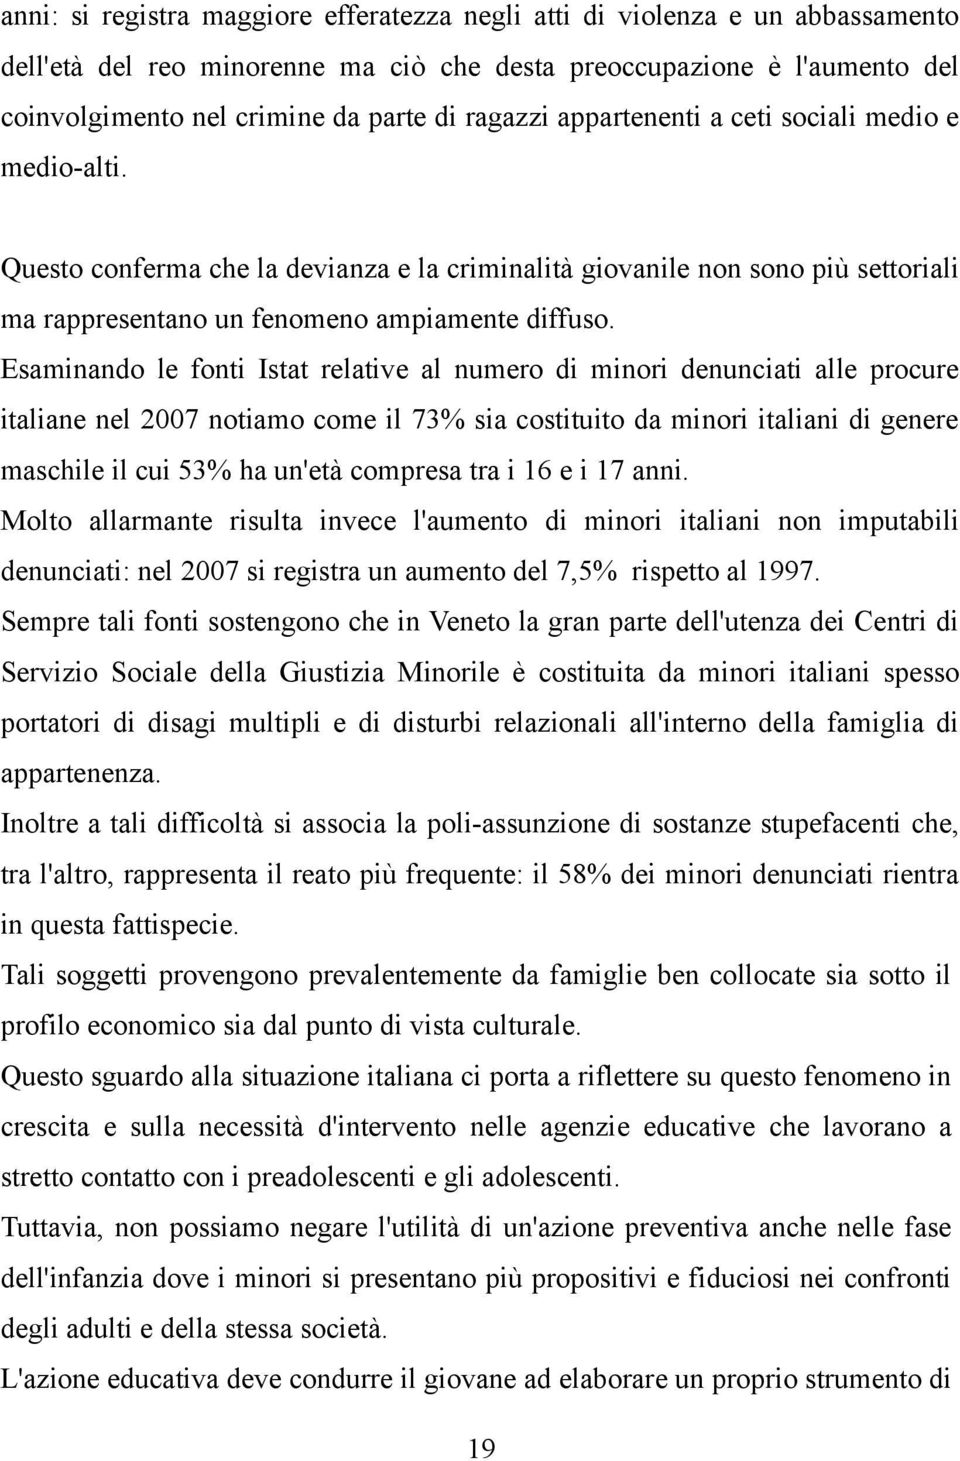 Esaminando le fonti Istat relative al numero di minori denunciati alle procure italiane nel 2007 notiamo come il 73% sia costituito da minori italiani di genere maschile il cui 53% ha un'età compresa